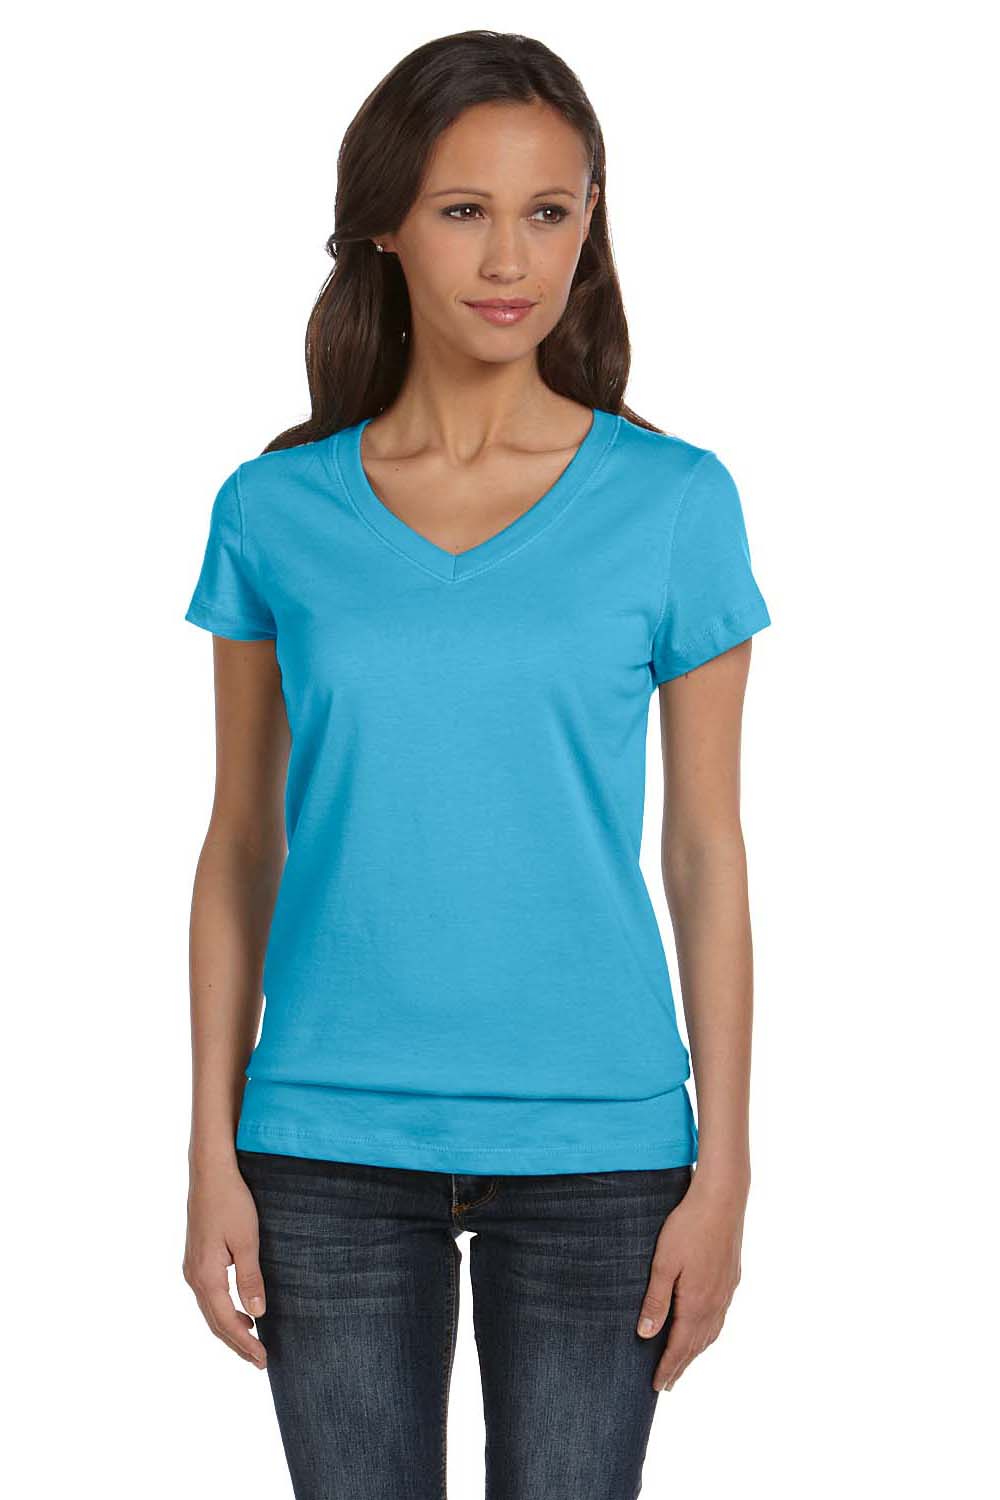 Bella + Canvas B6005 Womens Jersey Short Sleeve V-Neck T-Shirt Ocean Blue Front